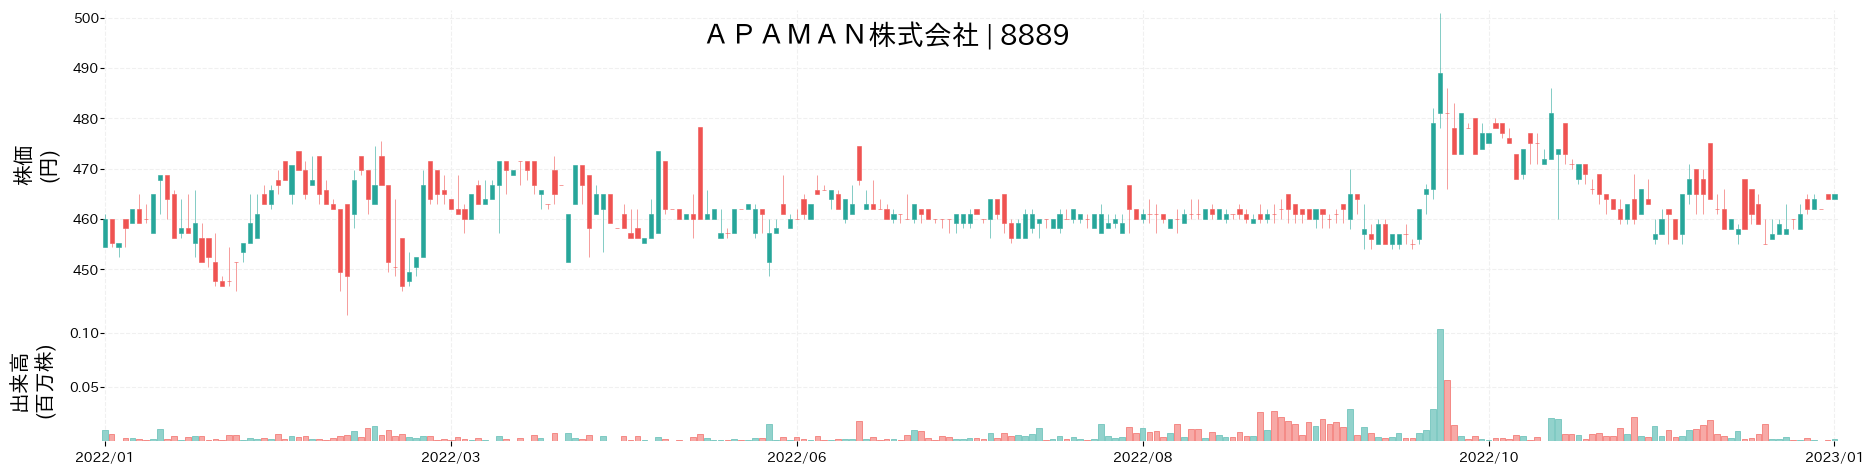 APAMANの株価推移(2022)